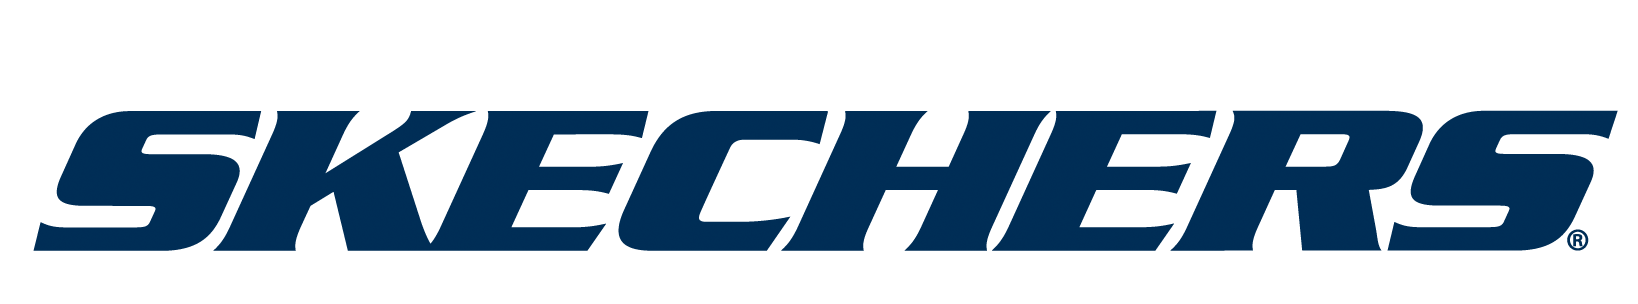 Skechers-logo-img